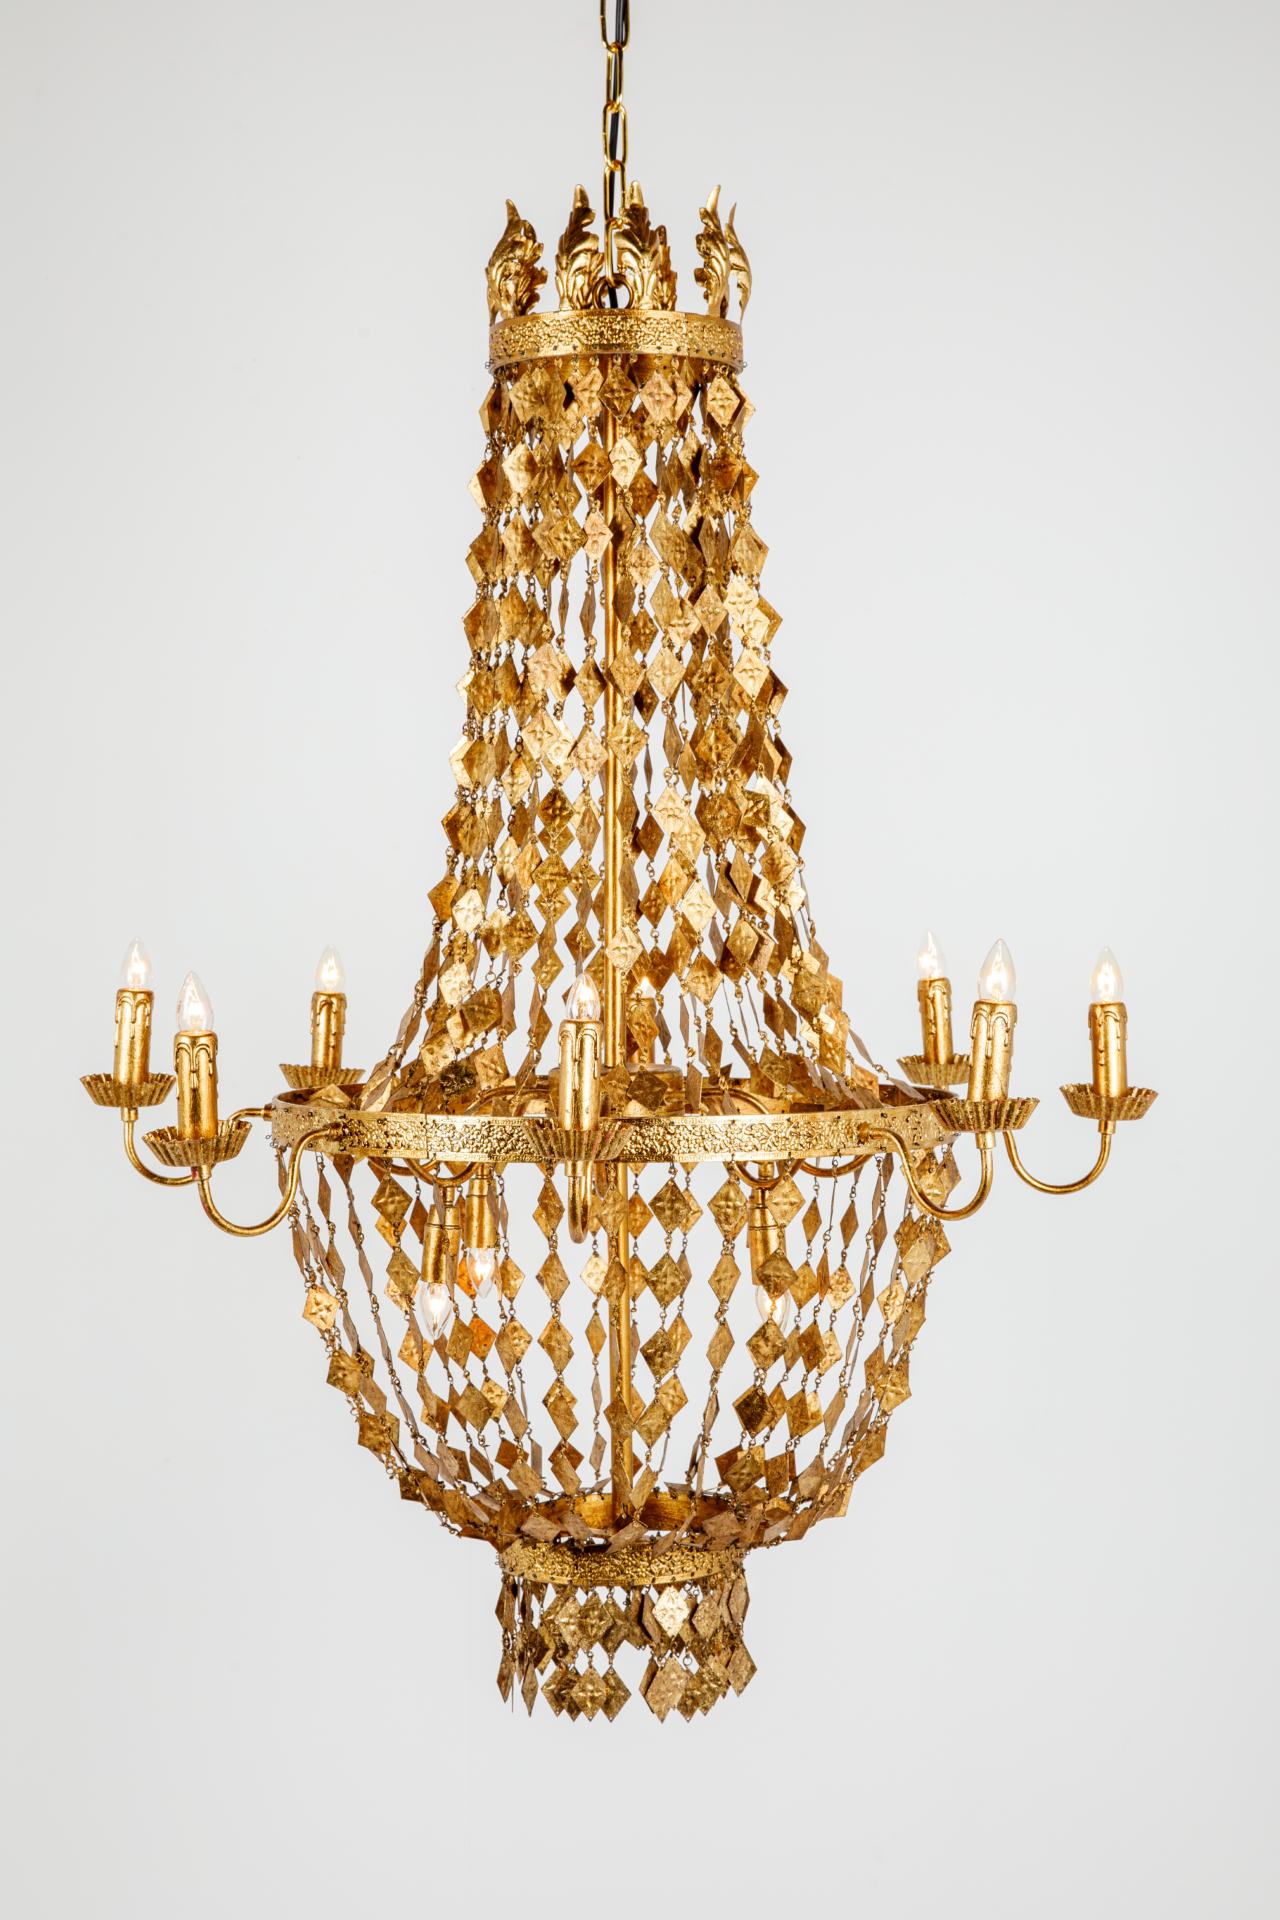 New golden chandeliers